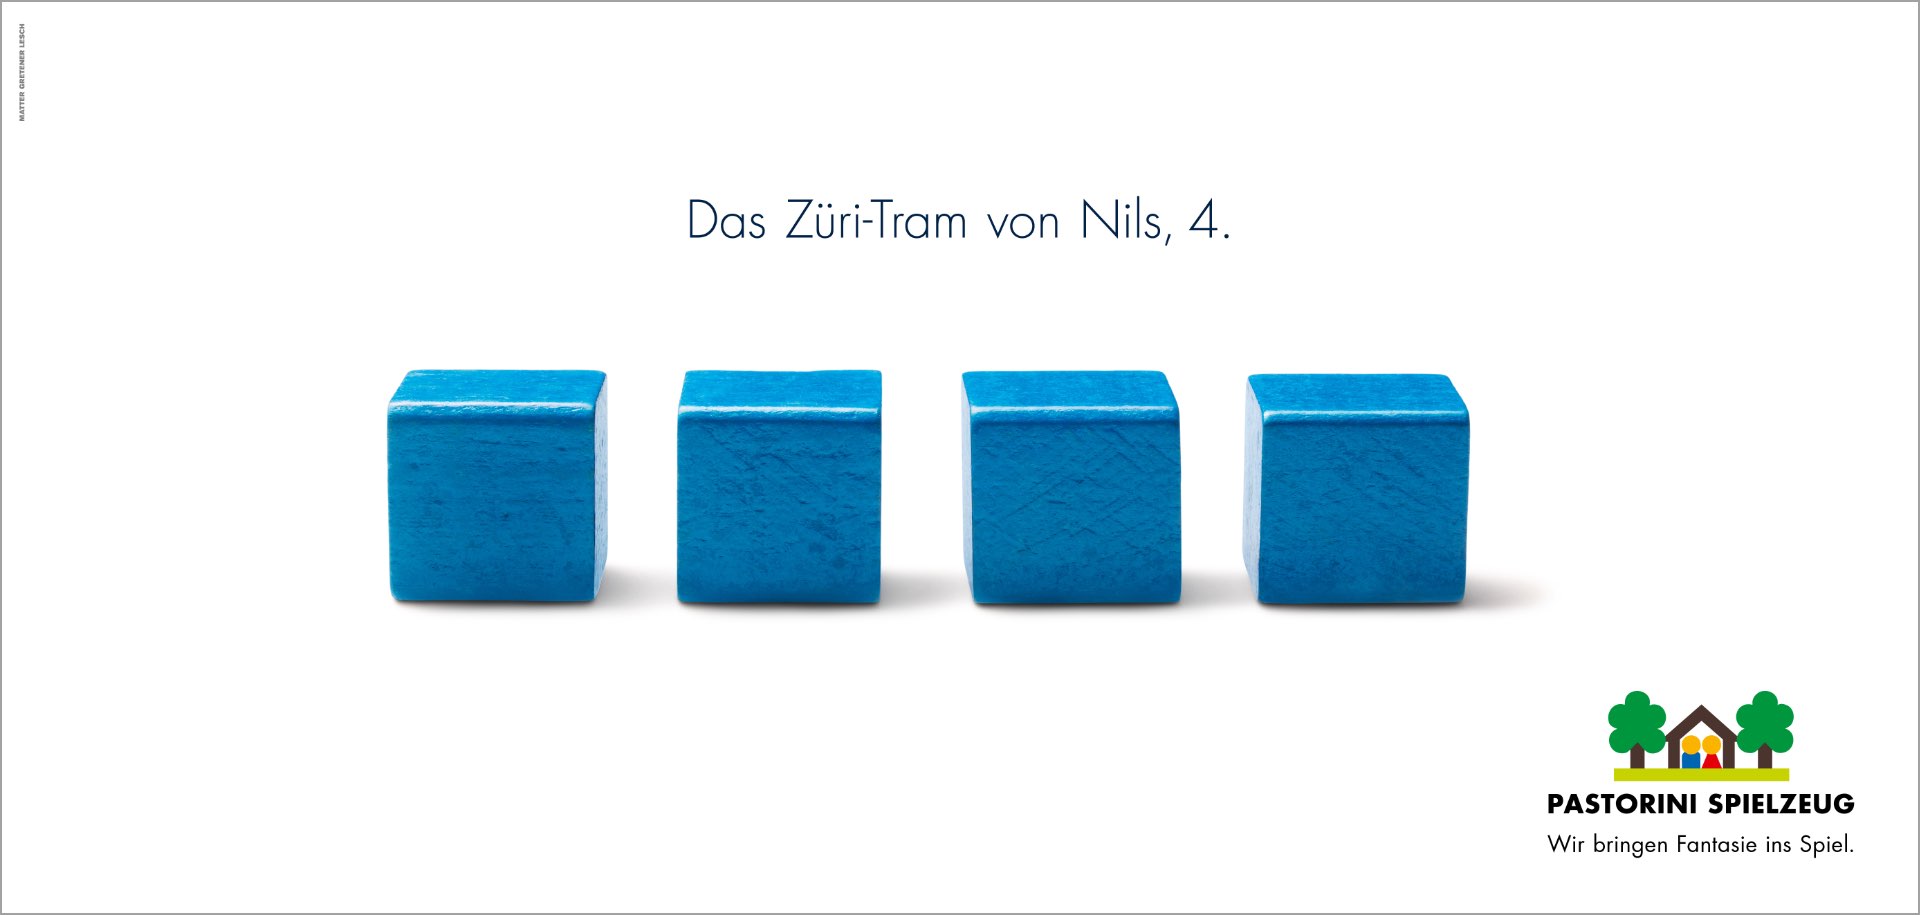 Das Züri-Tram von Nils, 4.